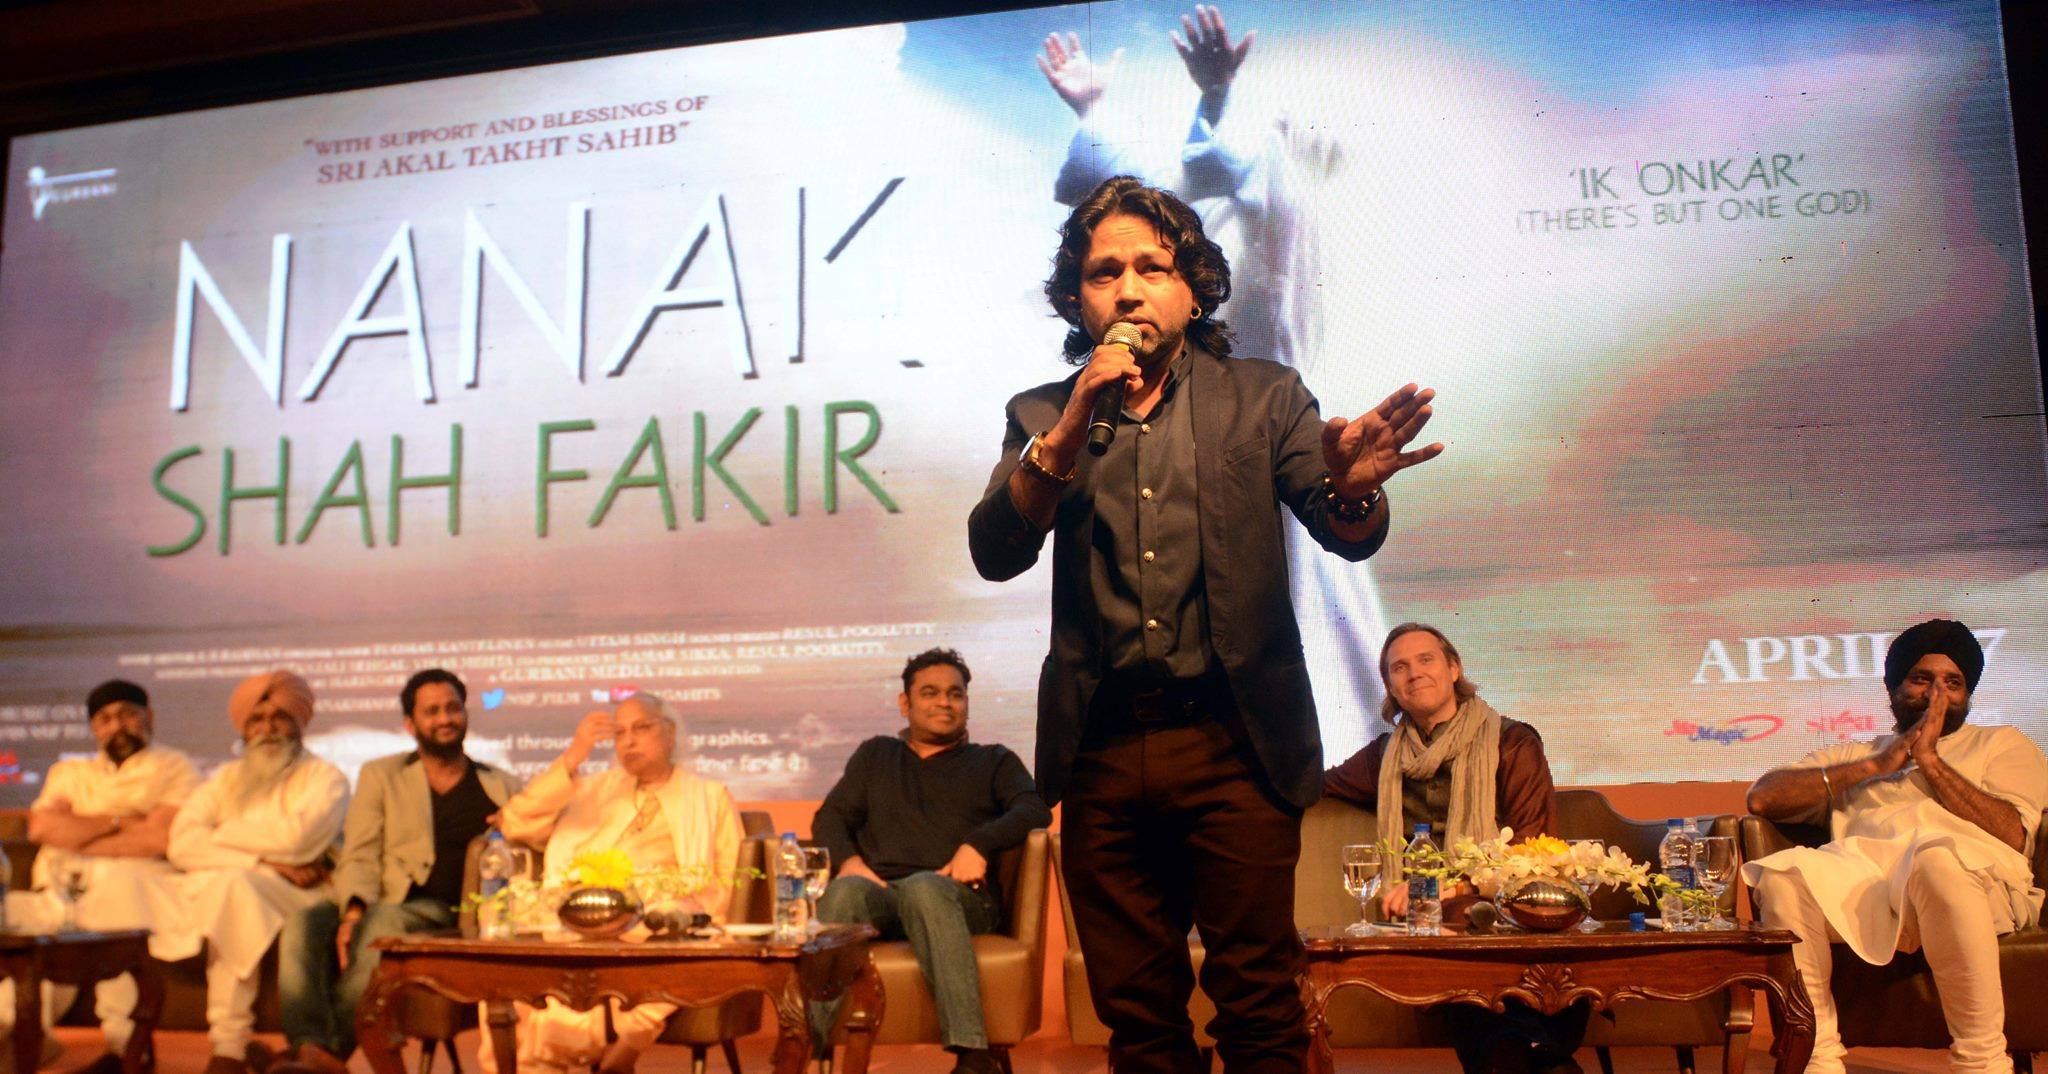 फिल्म नानक शाह फकीर के आॅडियो लॉन्च पर गायक कैलाश खेर. (फोटो साभार: फेसबुक/Jai ho!-A R Rahman Club)